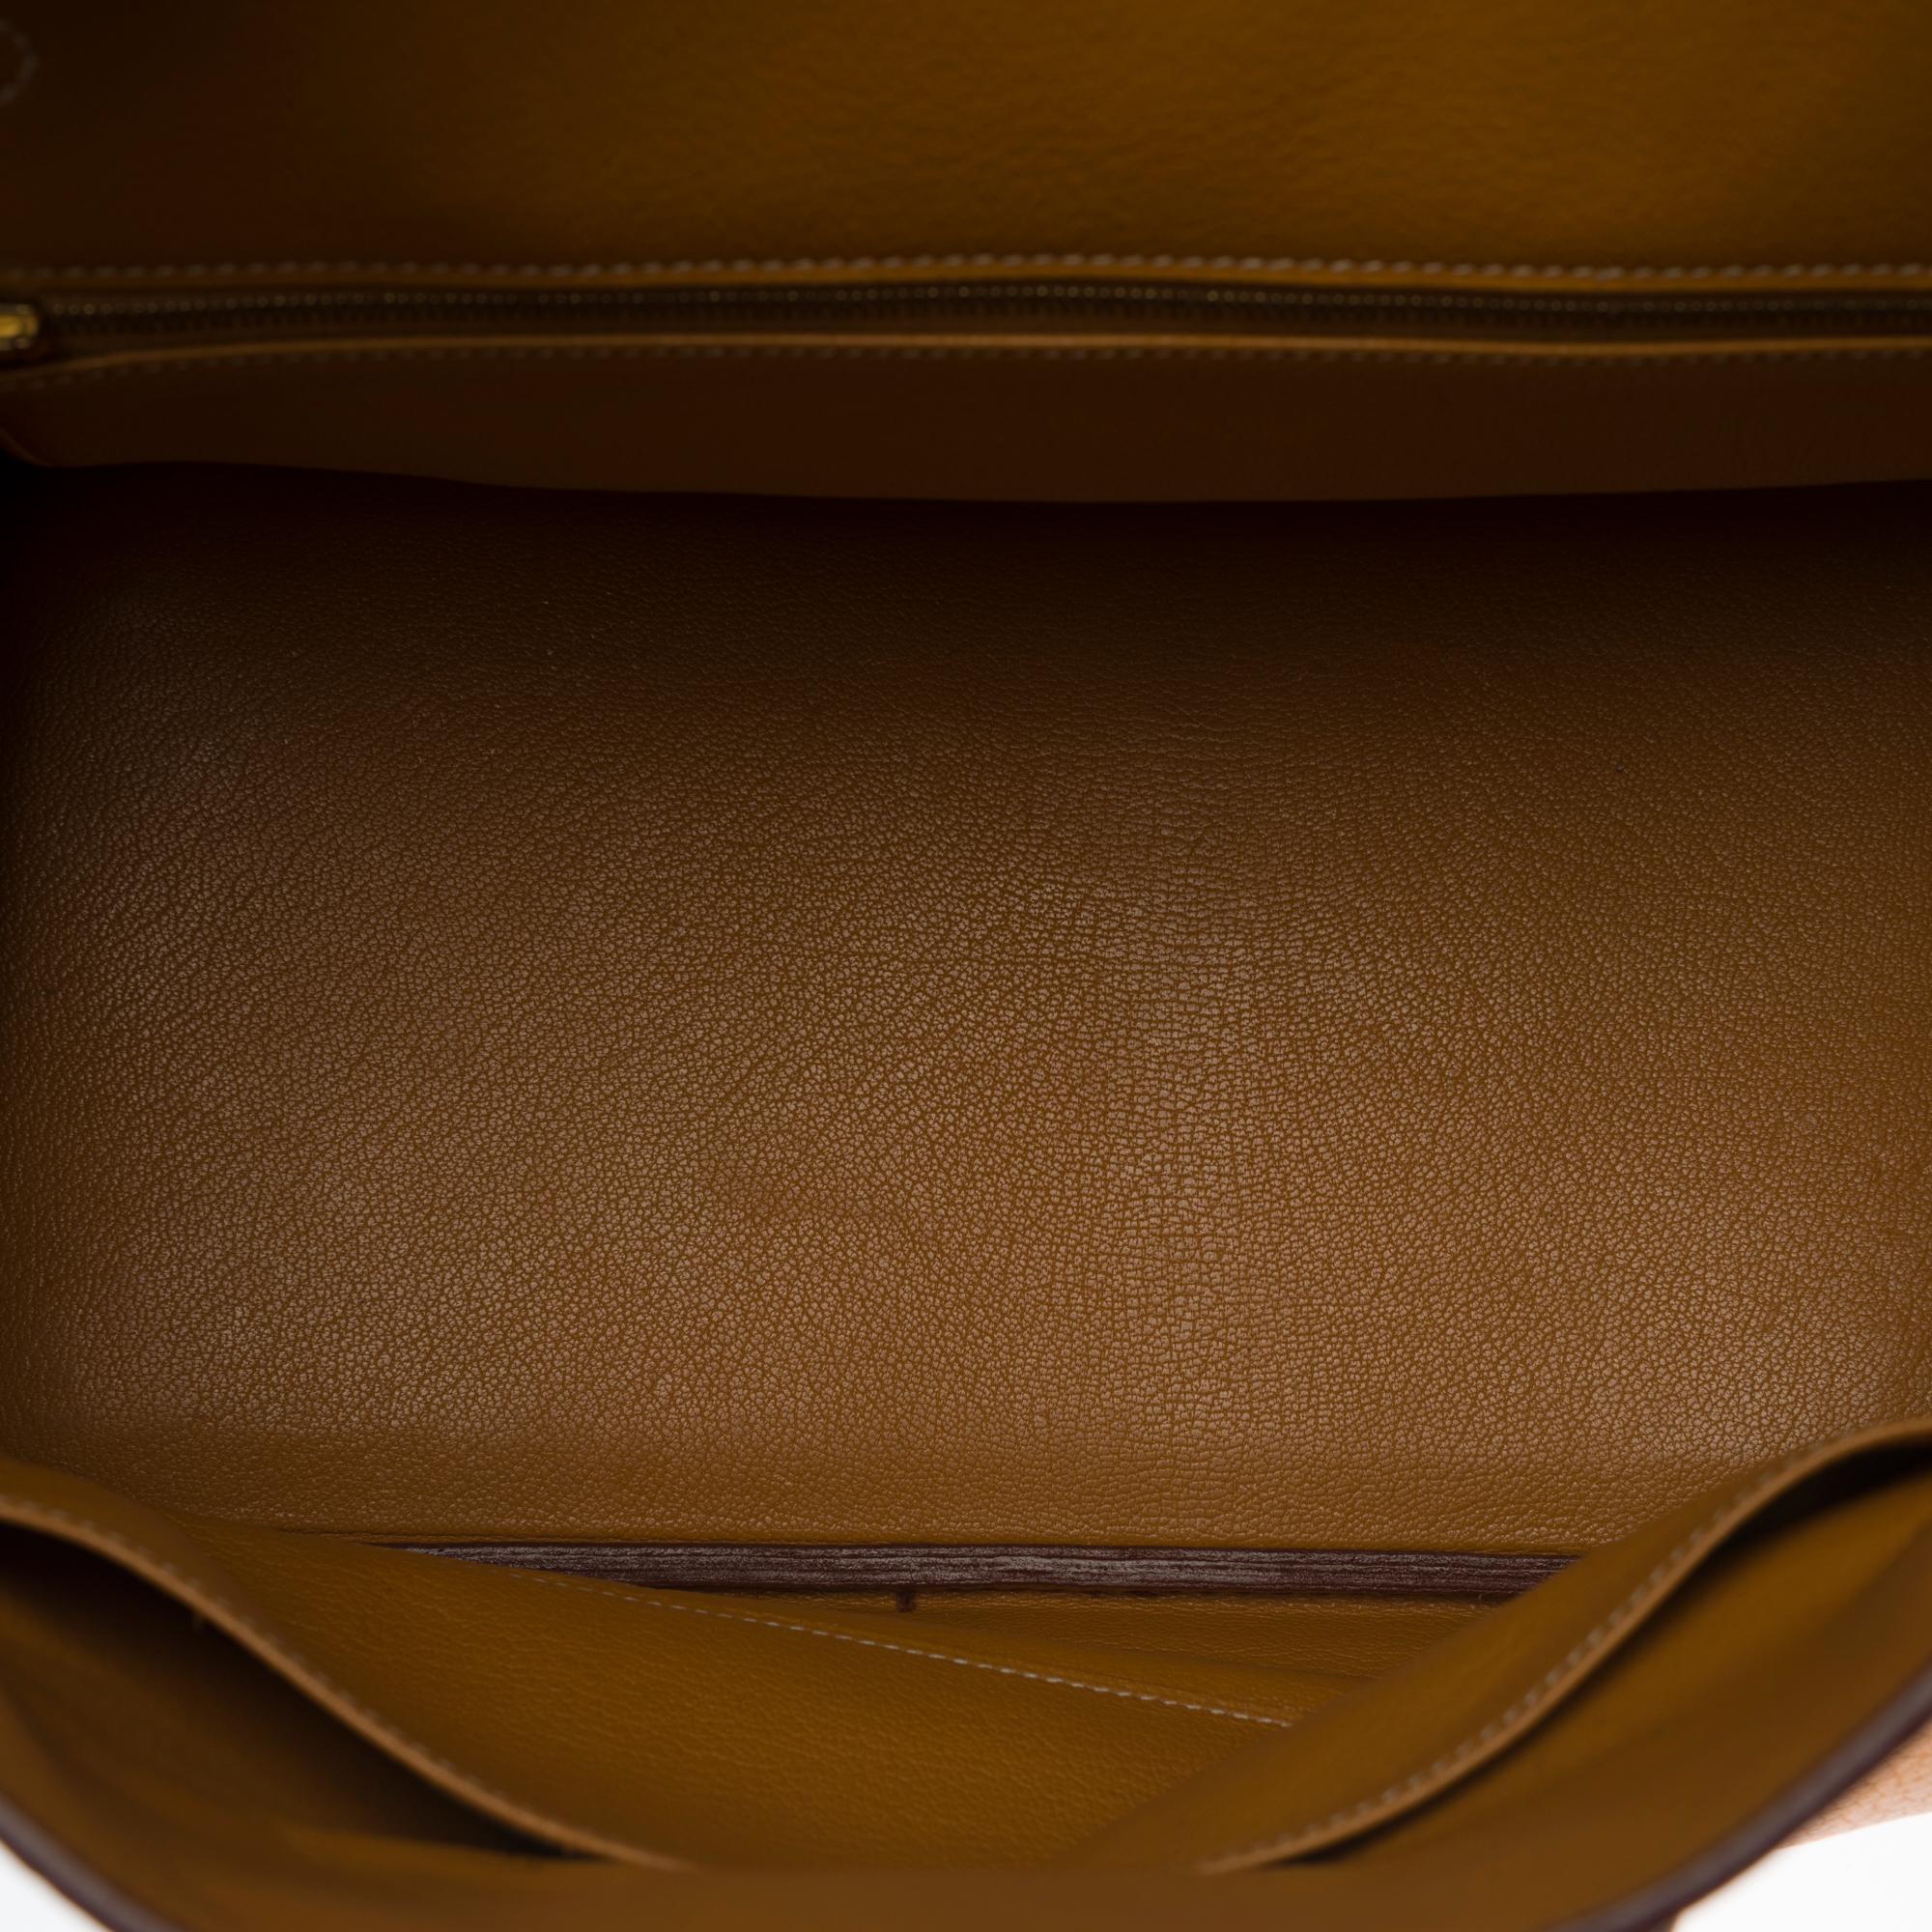 Women's Rare Hermès Haut-à-Courroies (HAC) handbag in Gold Vache Ardennes leather, GHW